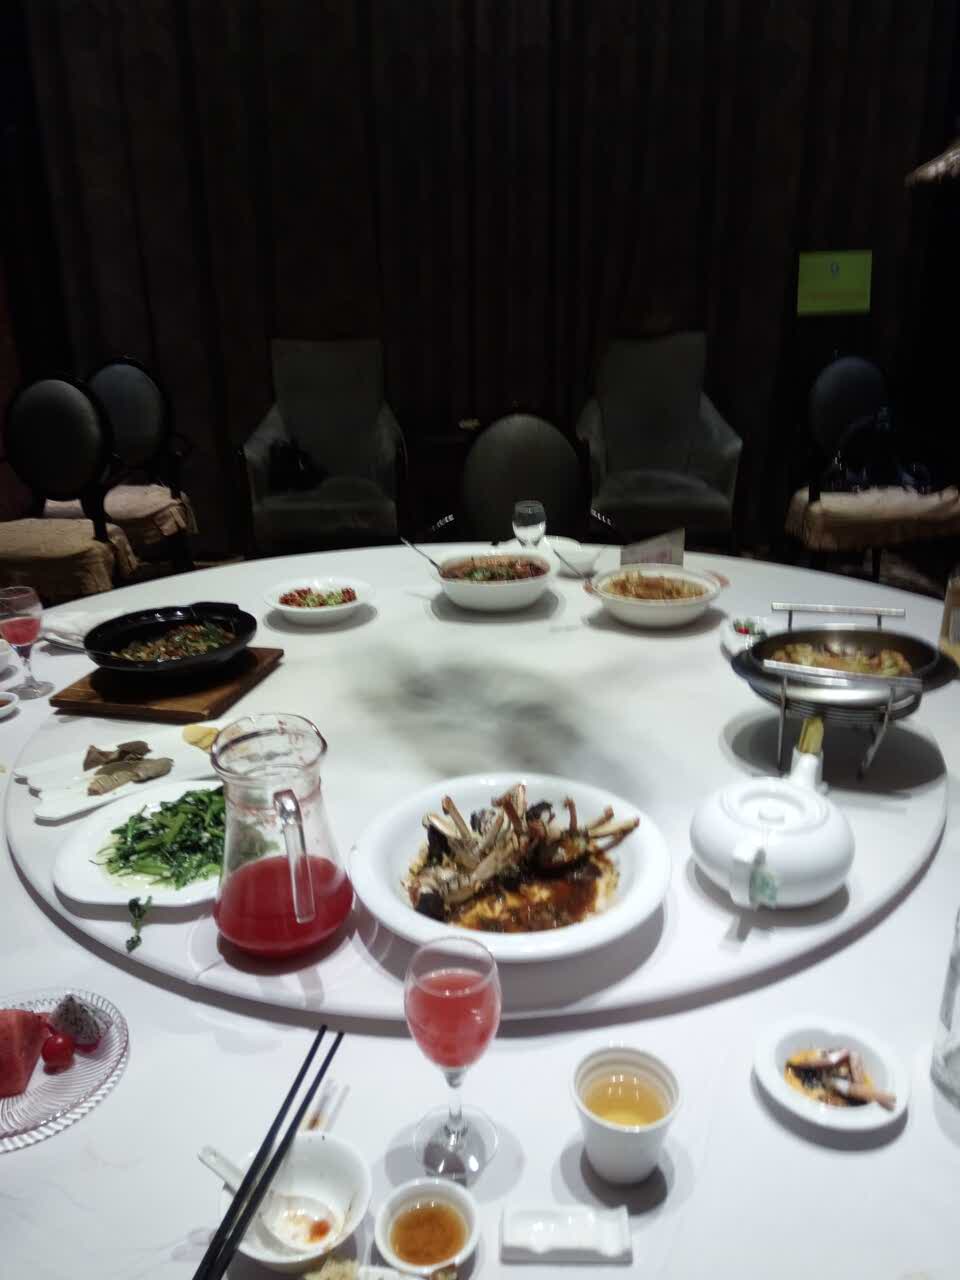 石浦大酒店菜图片